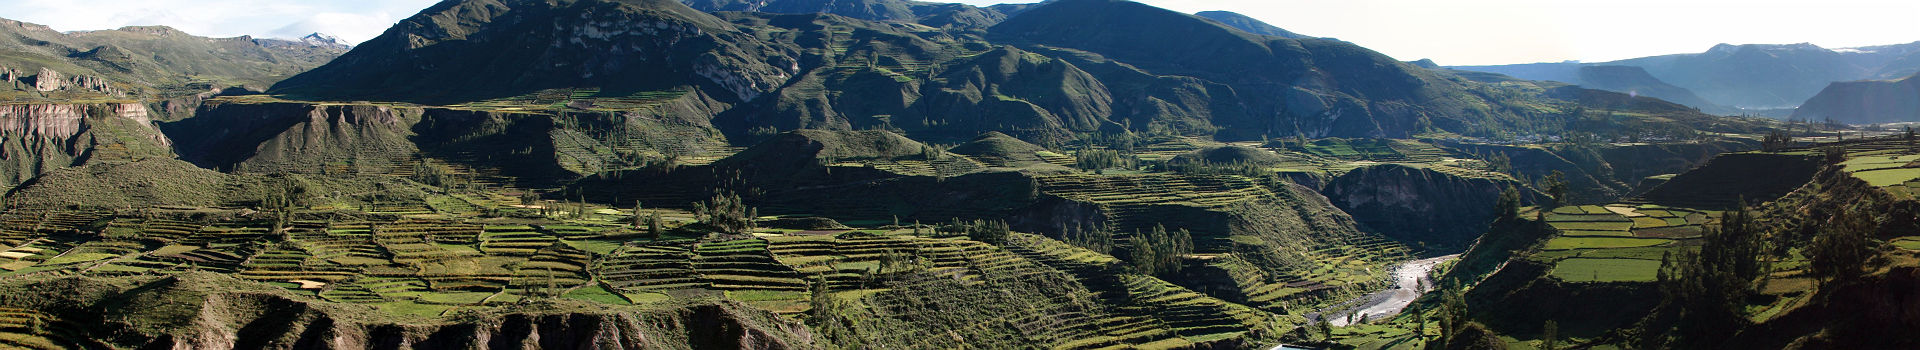 La vallée du Colca et son Canyon à Arequipa, au Pérou